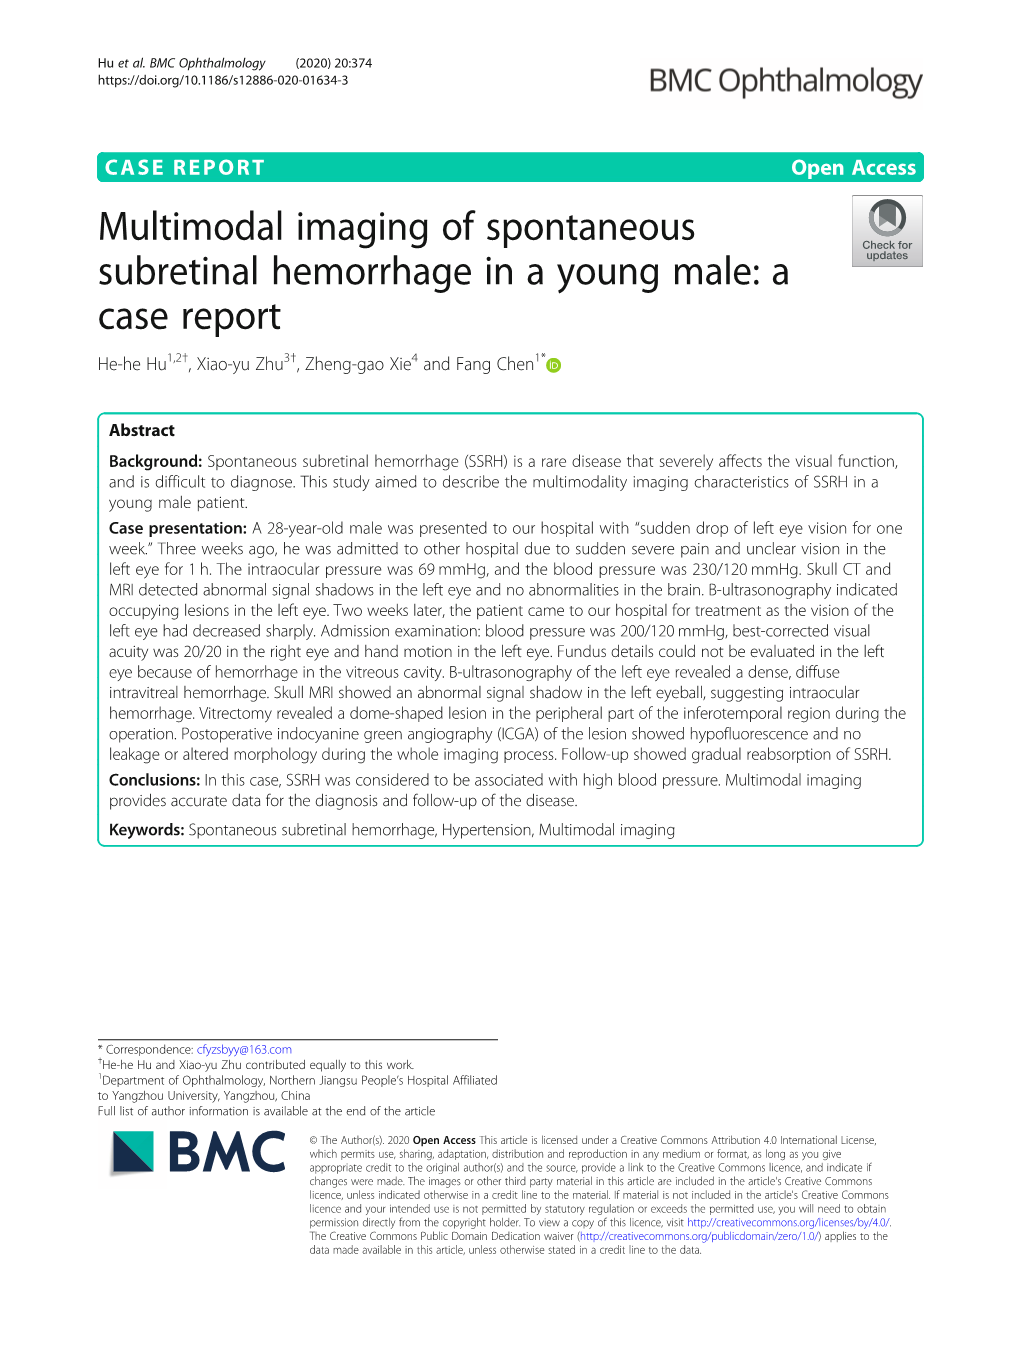 Multimodal Imaging of Spontaneous Subretinal Hemorrhage in a Young Male: a Case Report He-He Hu1,2†, Xiao-Yu Zhu3†, Zheng-Gao Xie4 and Fang Chen1*